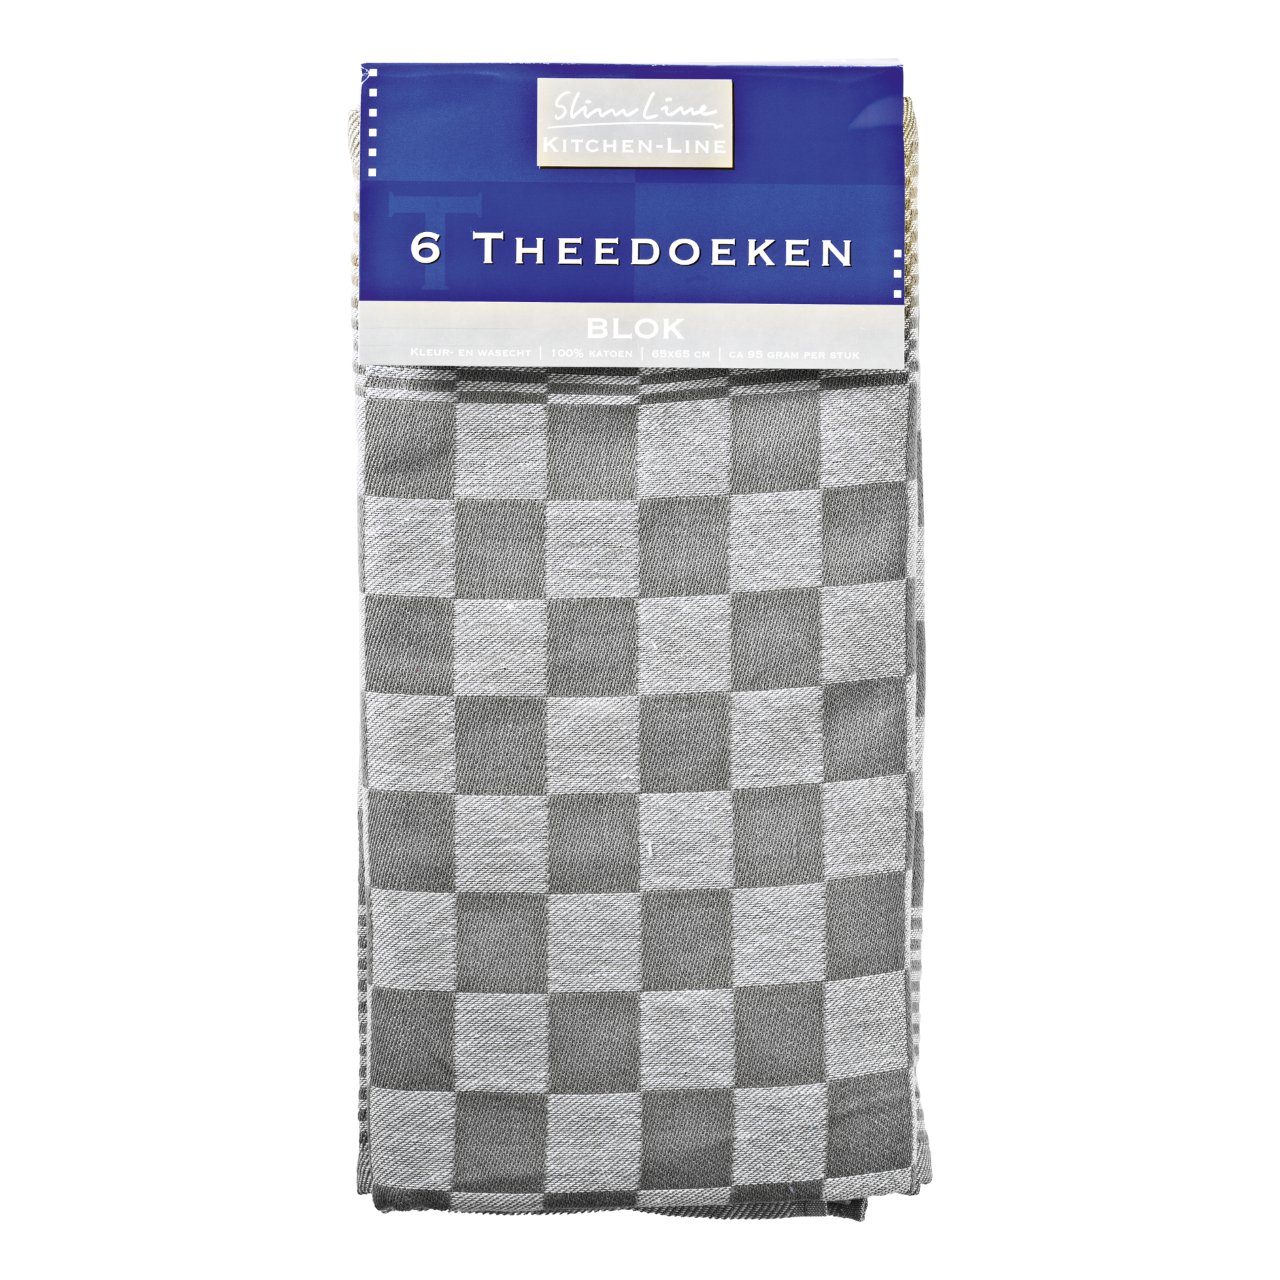 Theedoeken design Blok grijs 65 x 65 cm